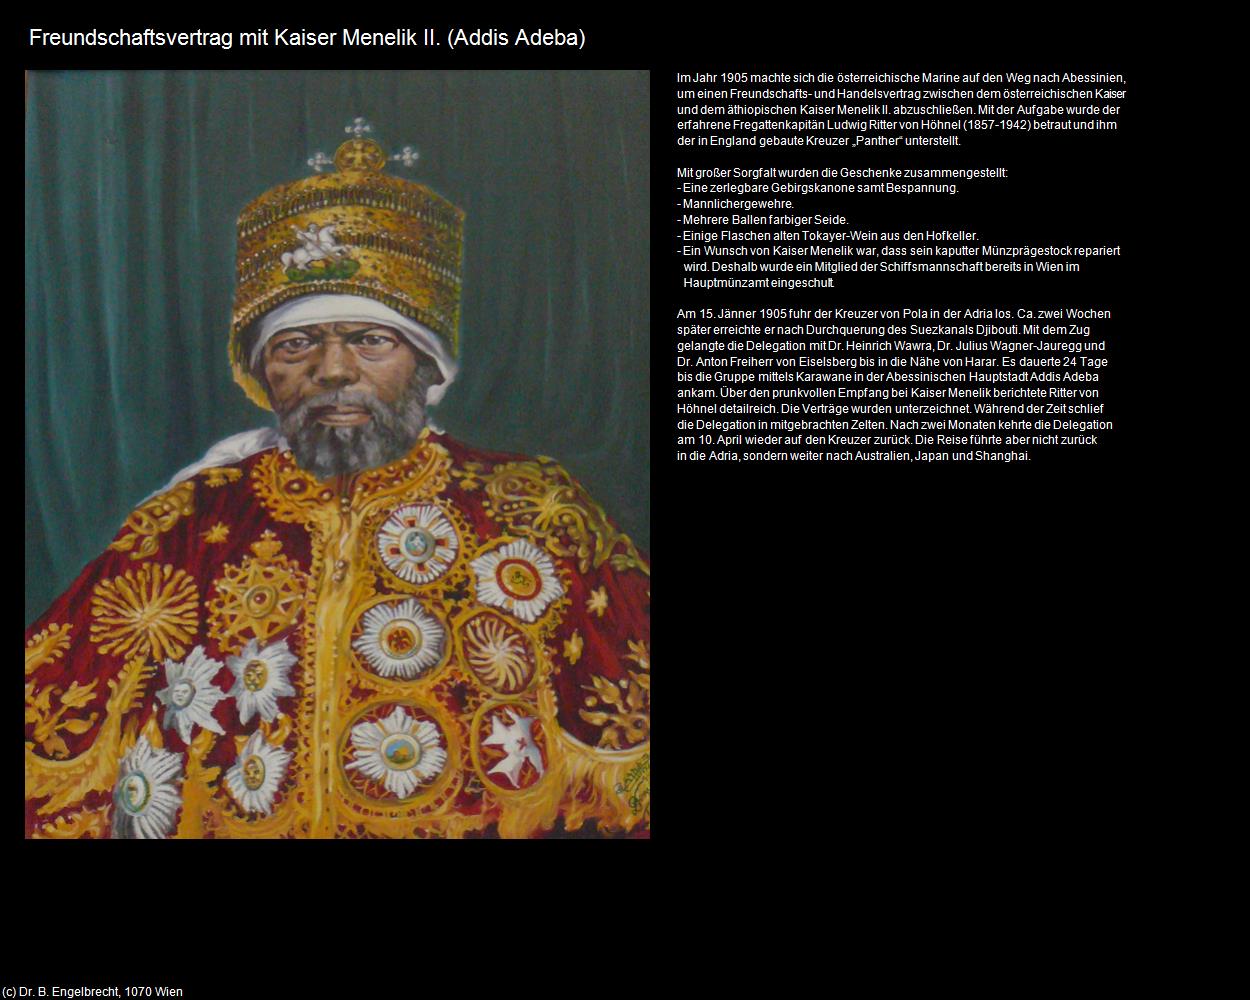 Freundschaftsvertrag mit Kaiser Menelik II. (Addis Abeba) in Äthiopien